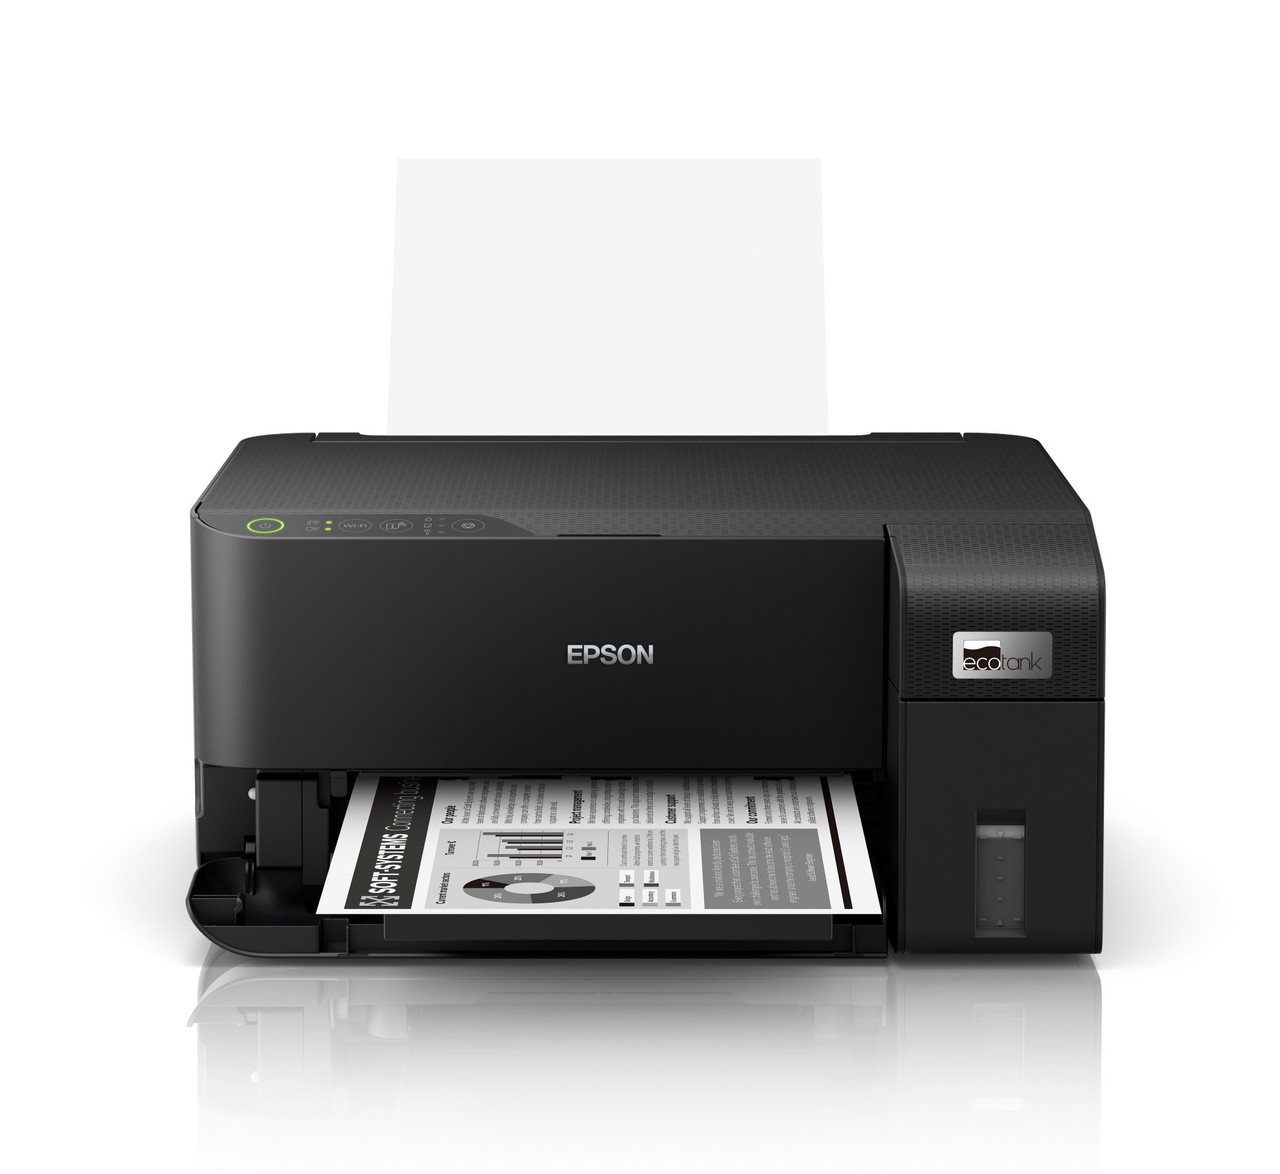 한국엡손이 친환경성과 출력 품질을 강화한 엡손 에코탱크 흑백 프린터 ‘M1050’을 출시한다.